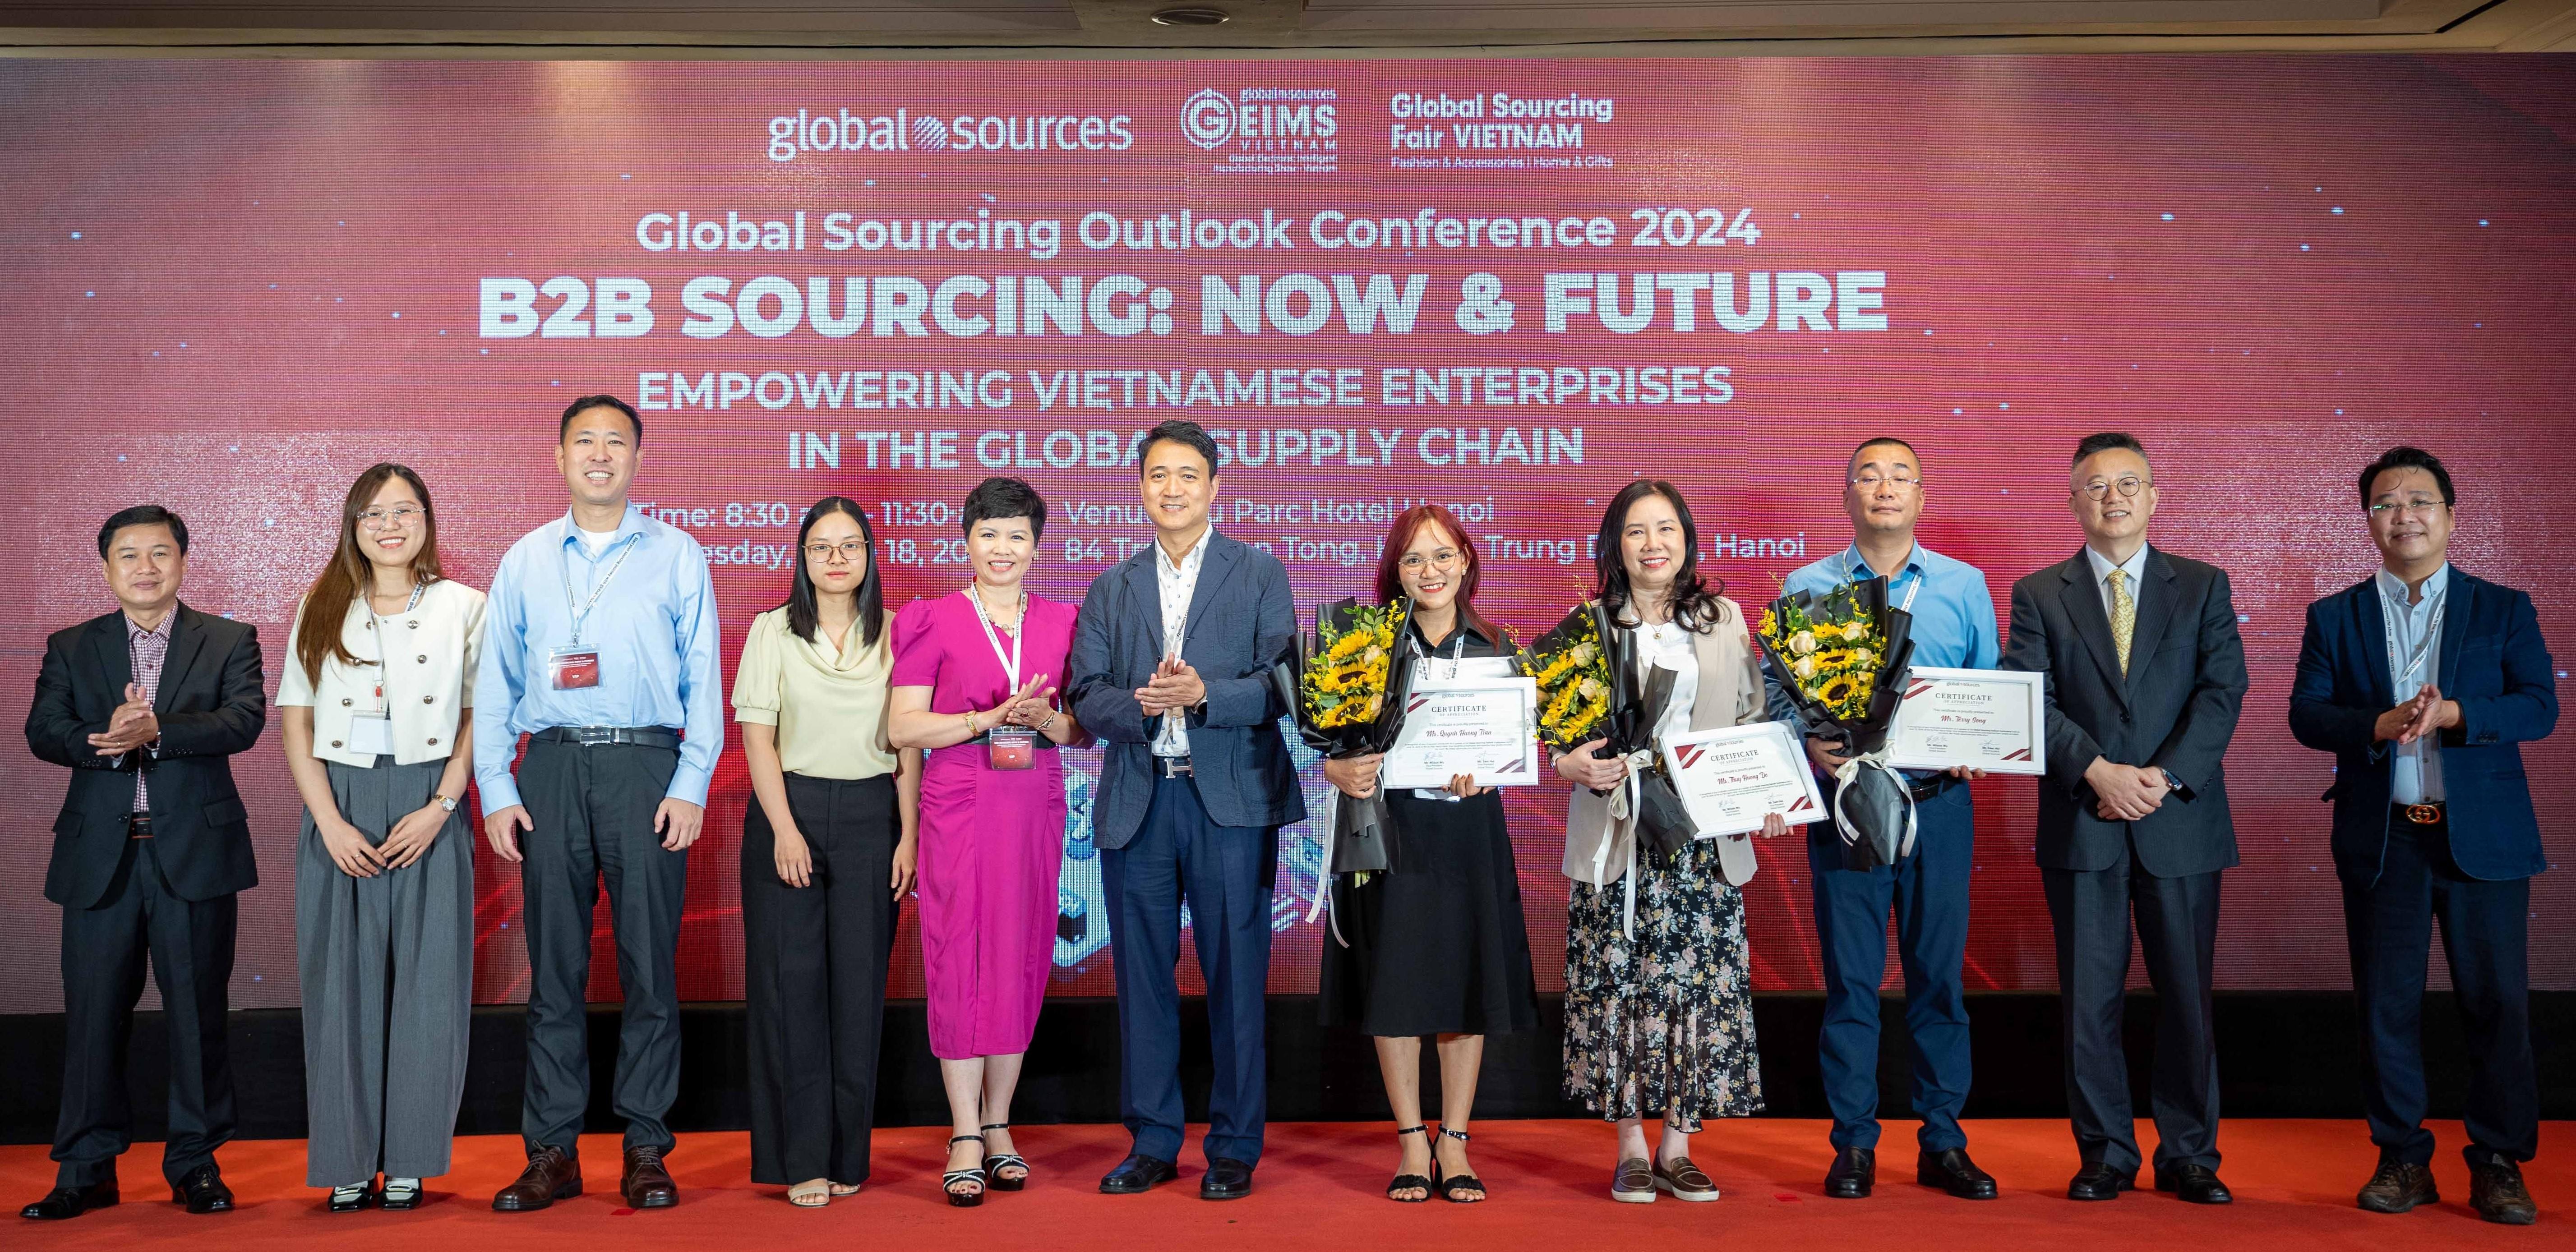 Giải pháp thăng hạng cạnh tranh cho doanh nghiệp Việt trong chuỗi cung ứng toàn cầu